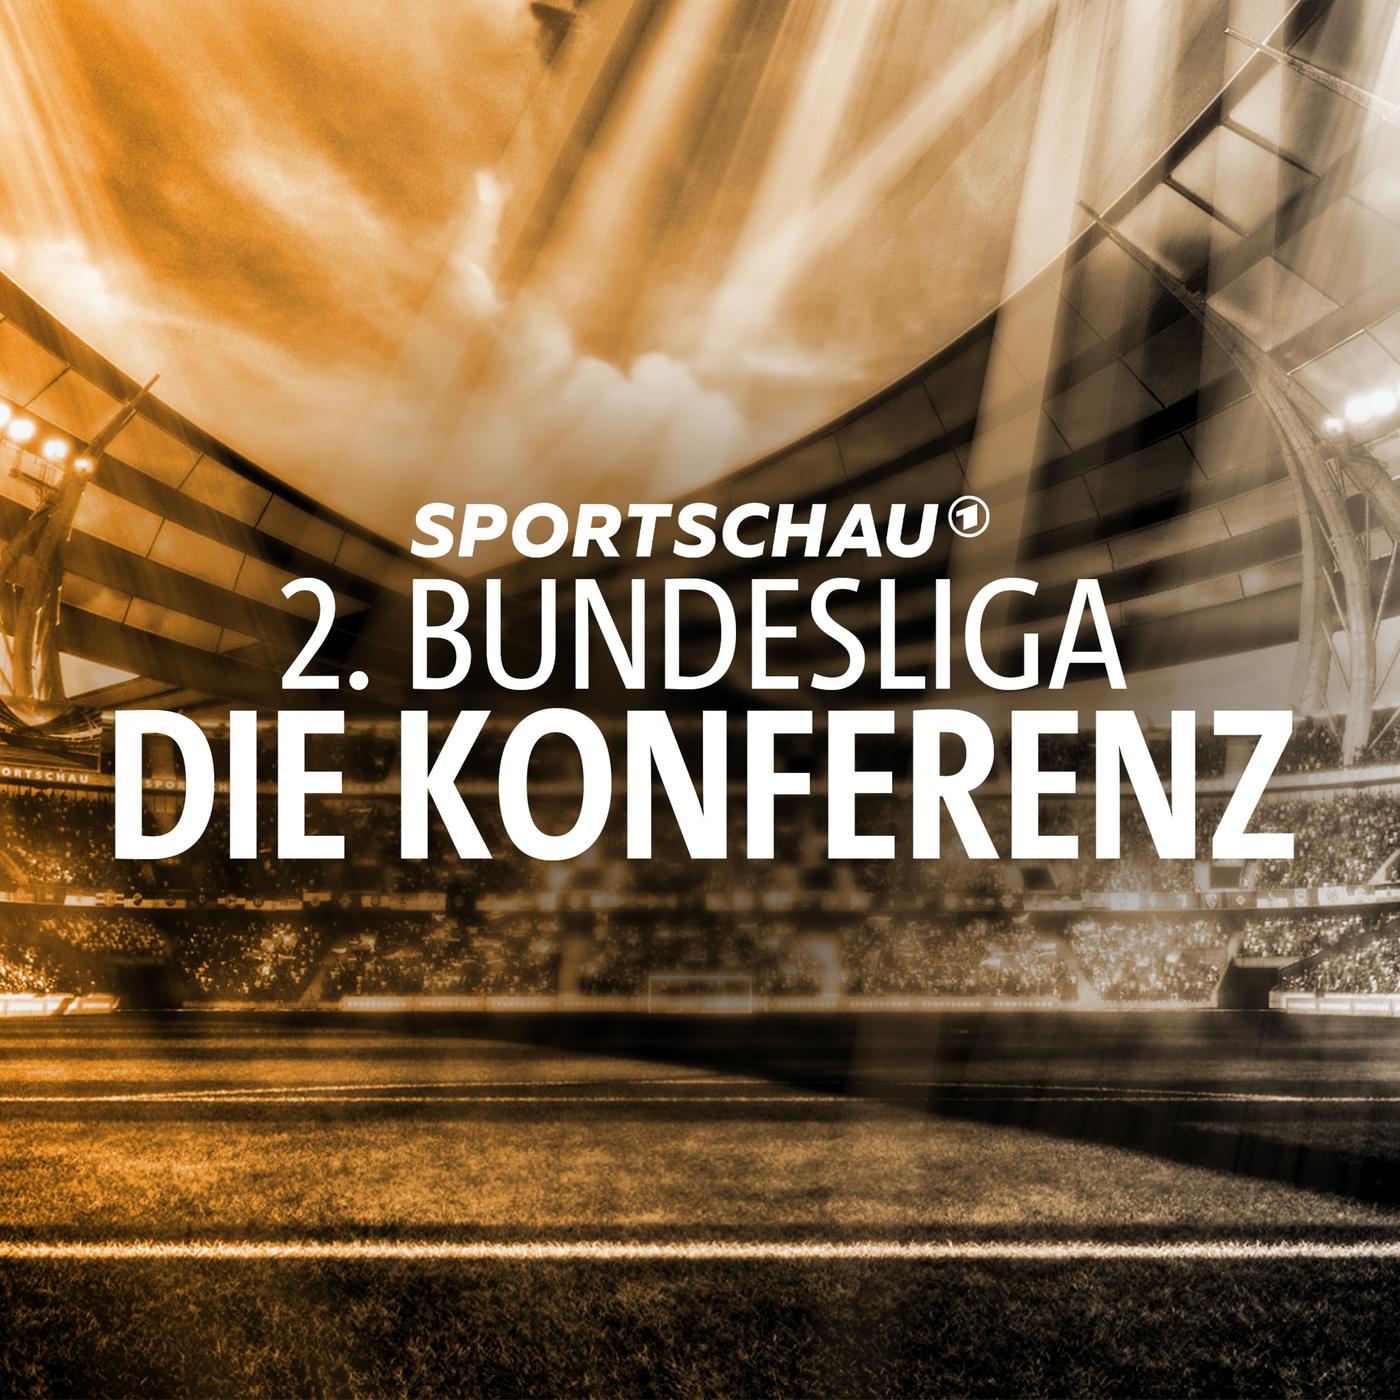 Sportschau 2